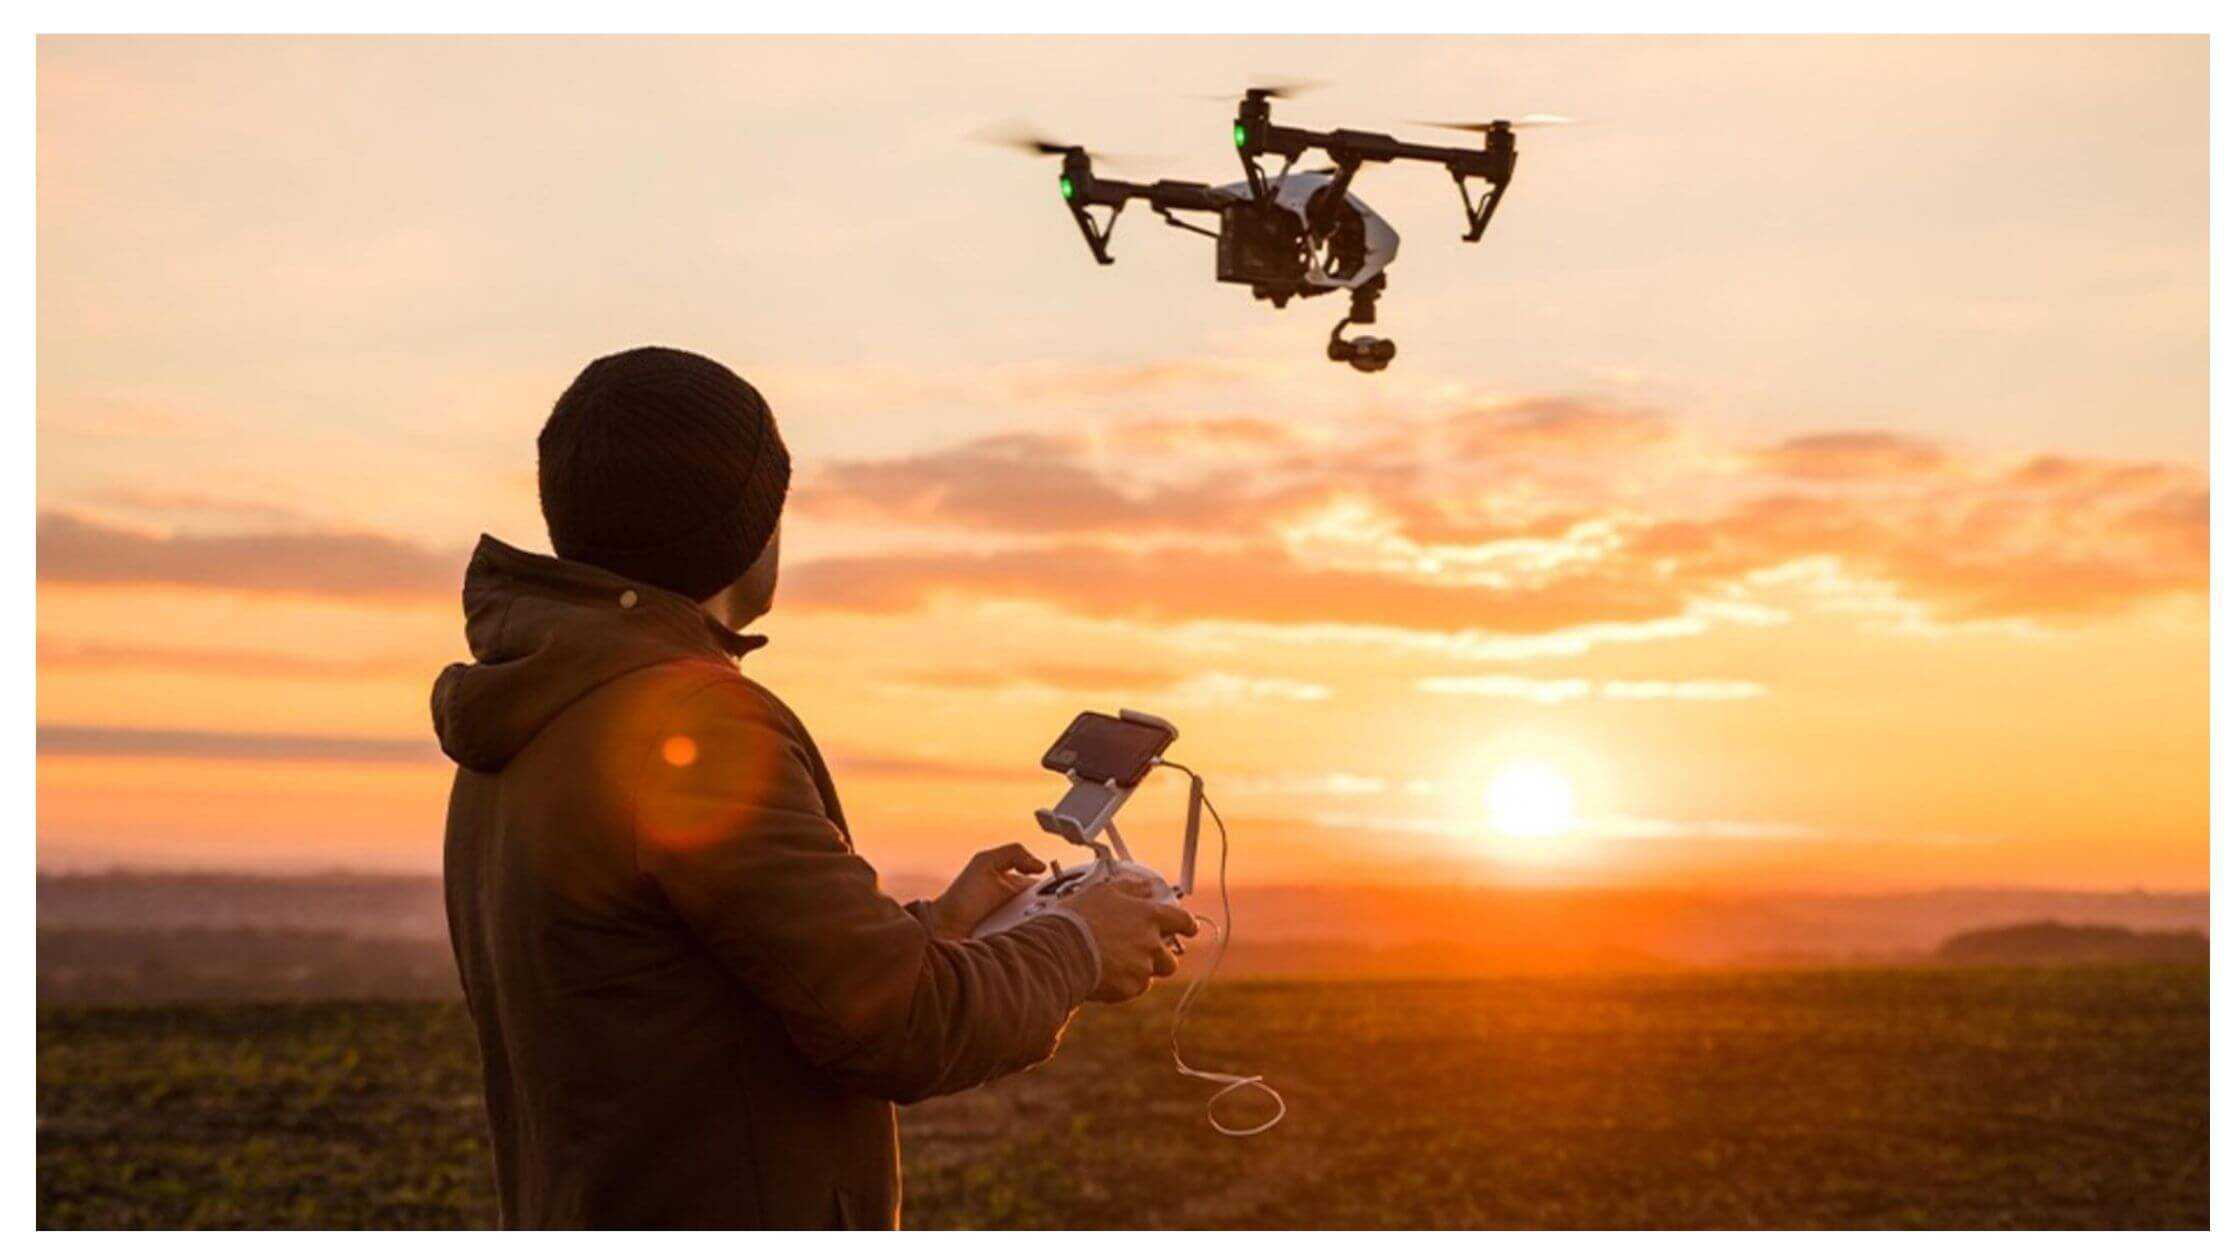 Izax Pro Drone